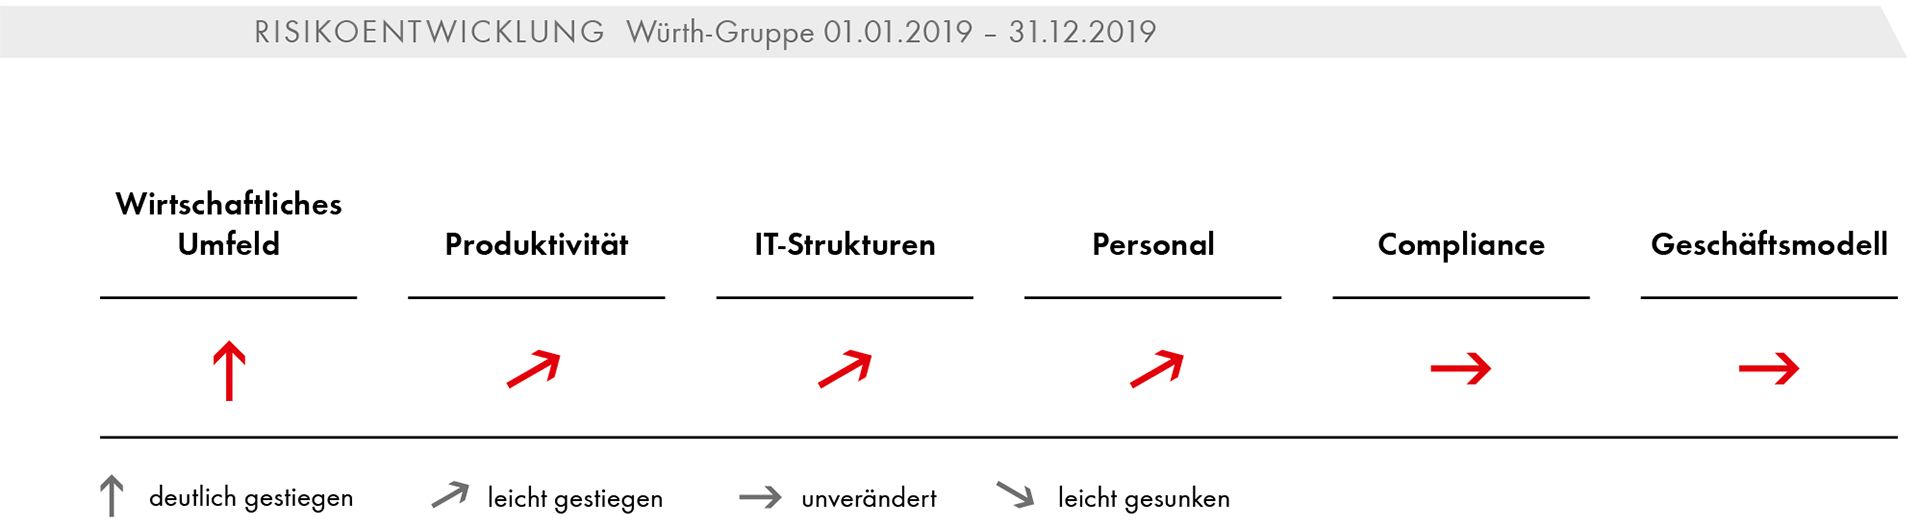 Risikoentwicklung Würth-Gruppe 01.01.2019 – 31.12.2019